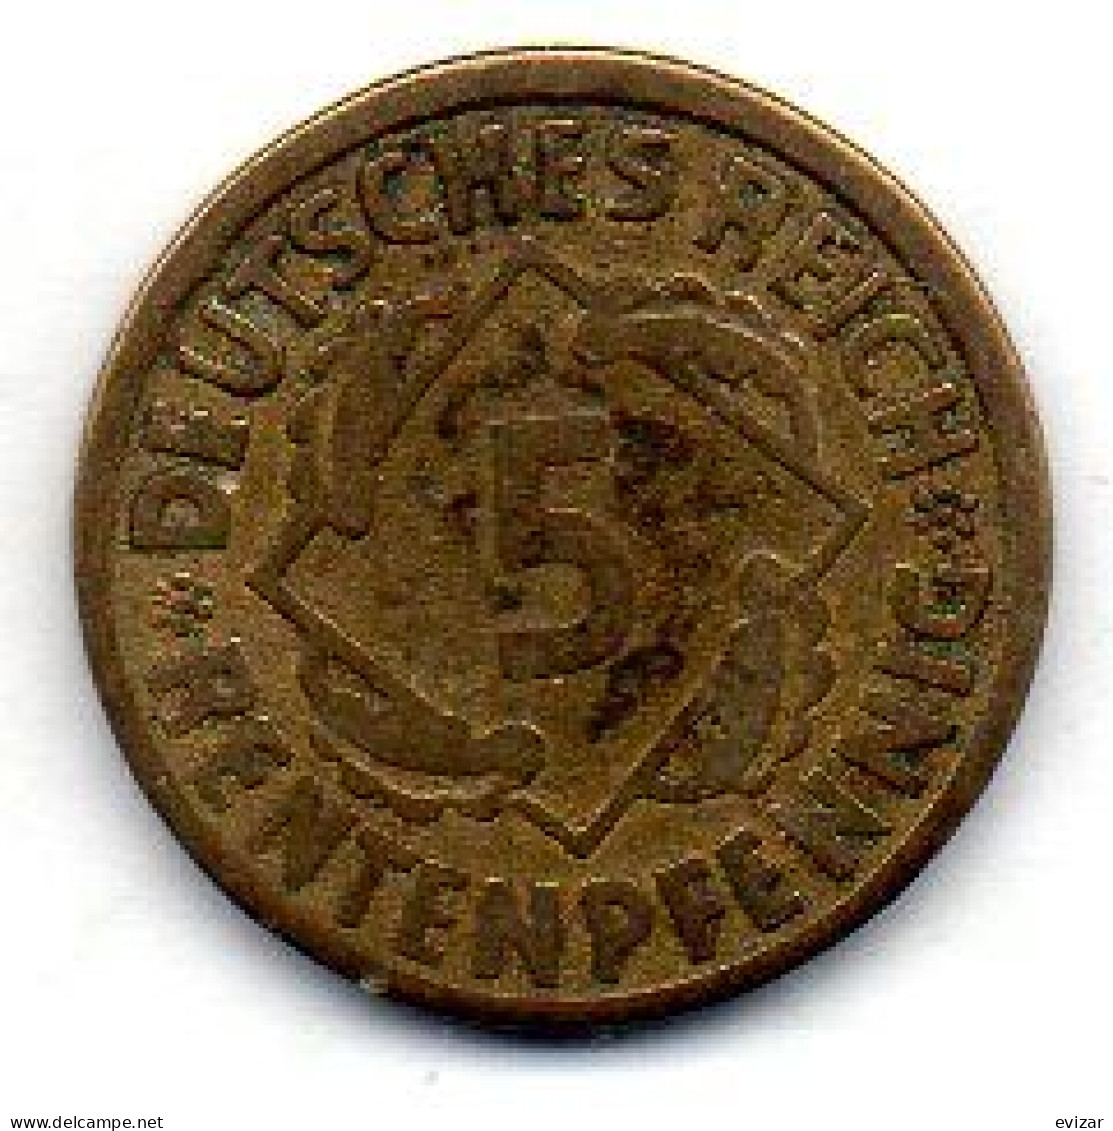 GERMANY - WEIMAR REPUBLIC, 5 Renten Pfennig, Aluminum-Bronze, Year 1924-G, KM # 32 - 5 Rentenpfennig & 5 Reichspfennig